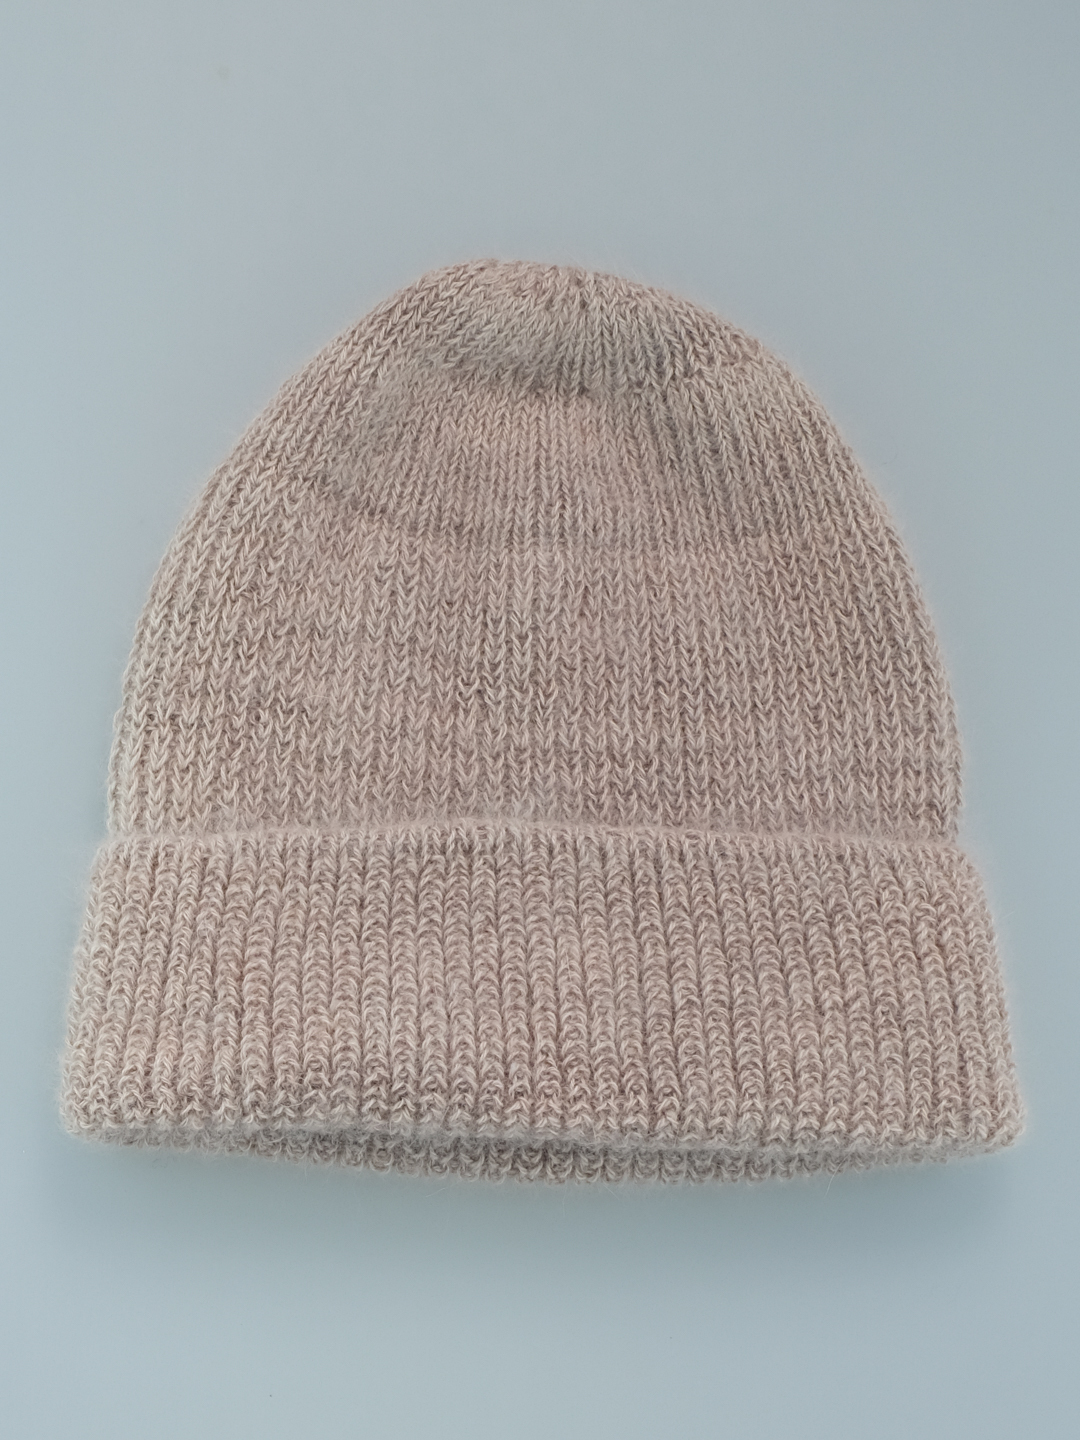 Вязаная арт шапка женская из ангоры зимняя резинкой 1 на 1 бежевая теплая с отворотом